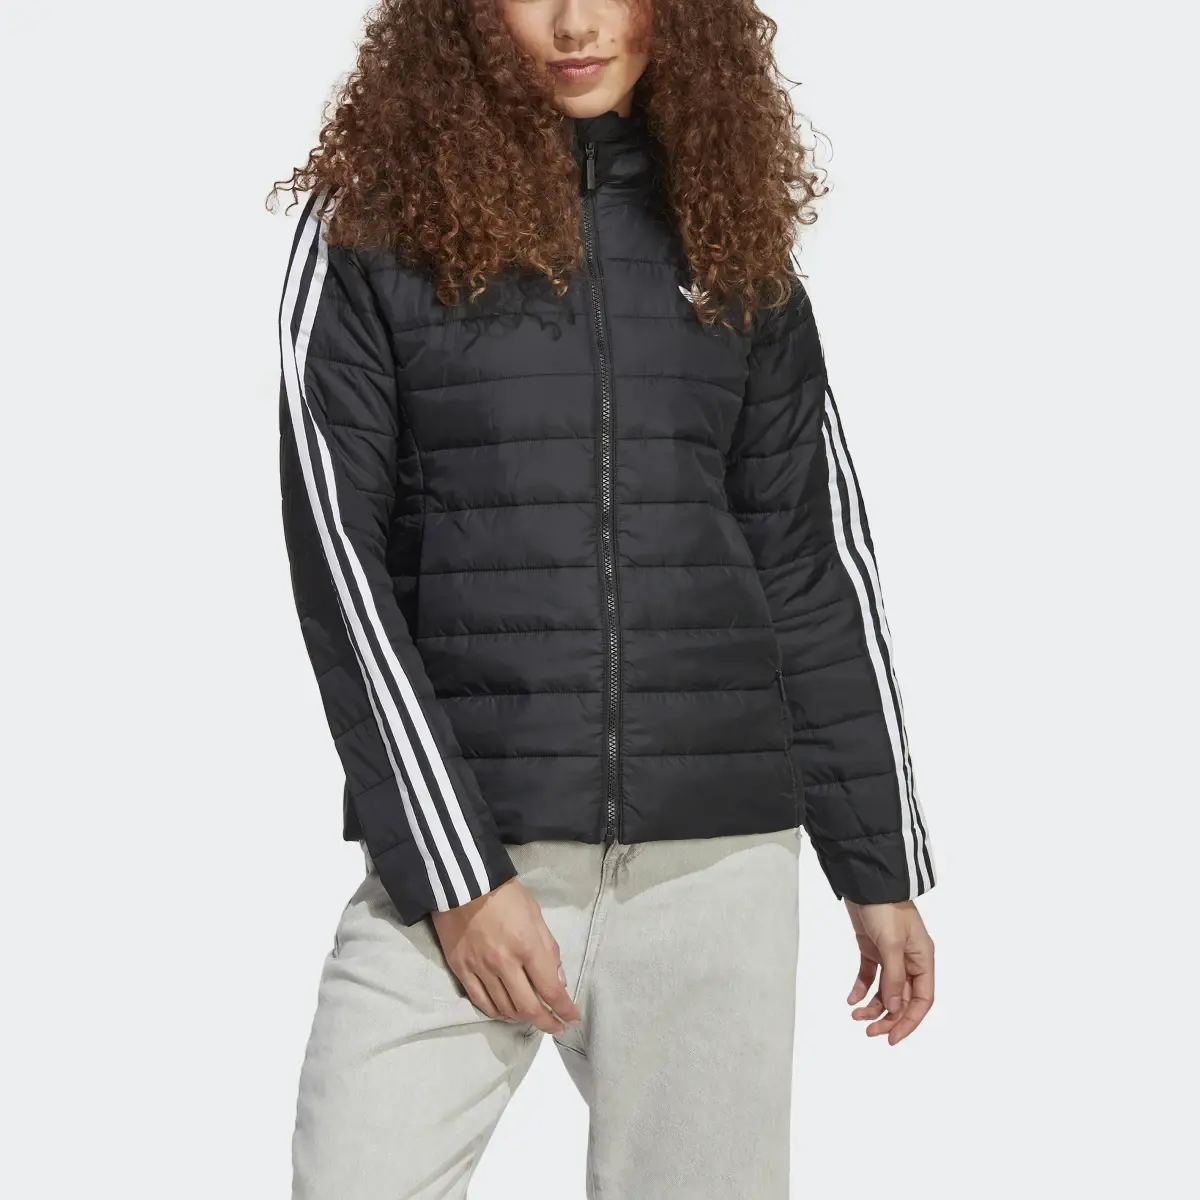 Adidas Hooded Premium Slim Jacket. 1